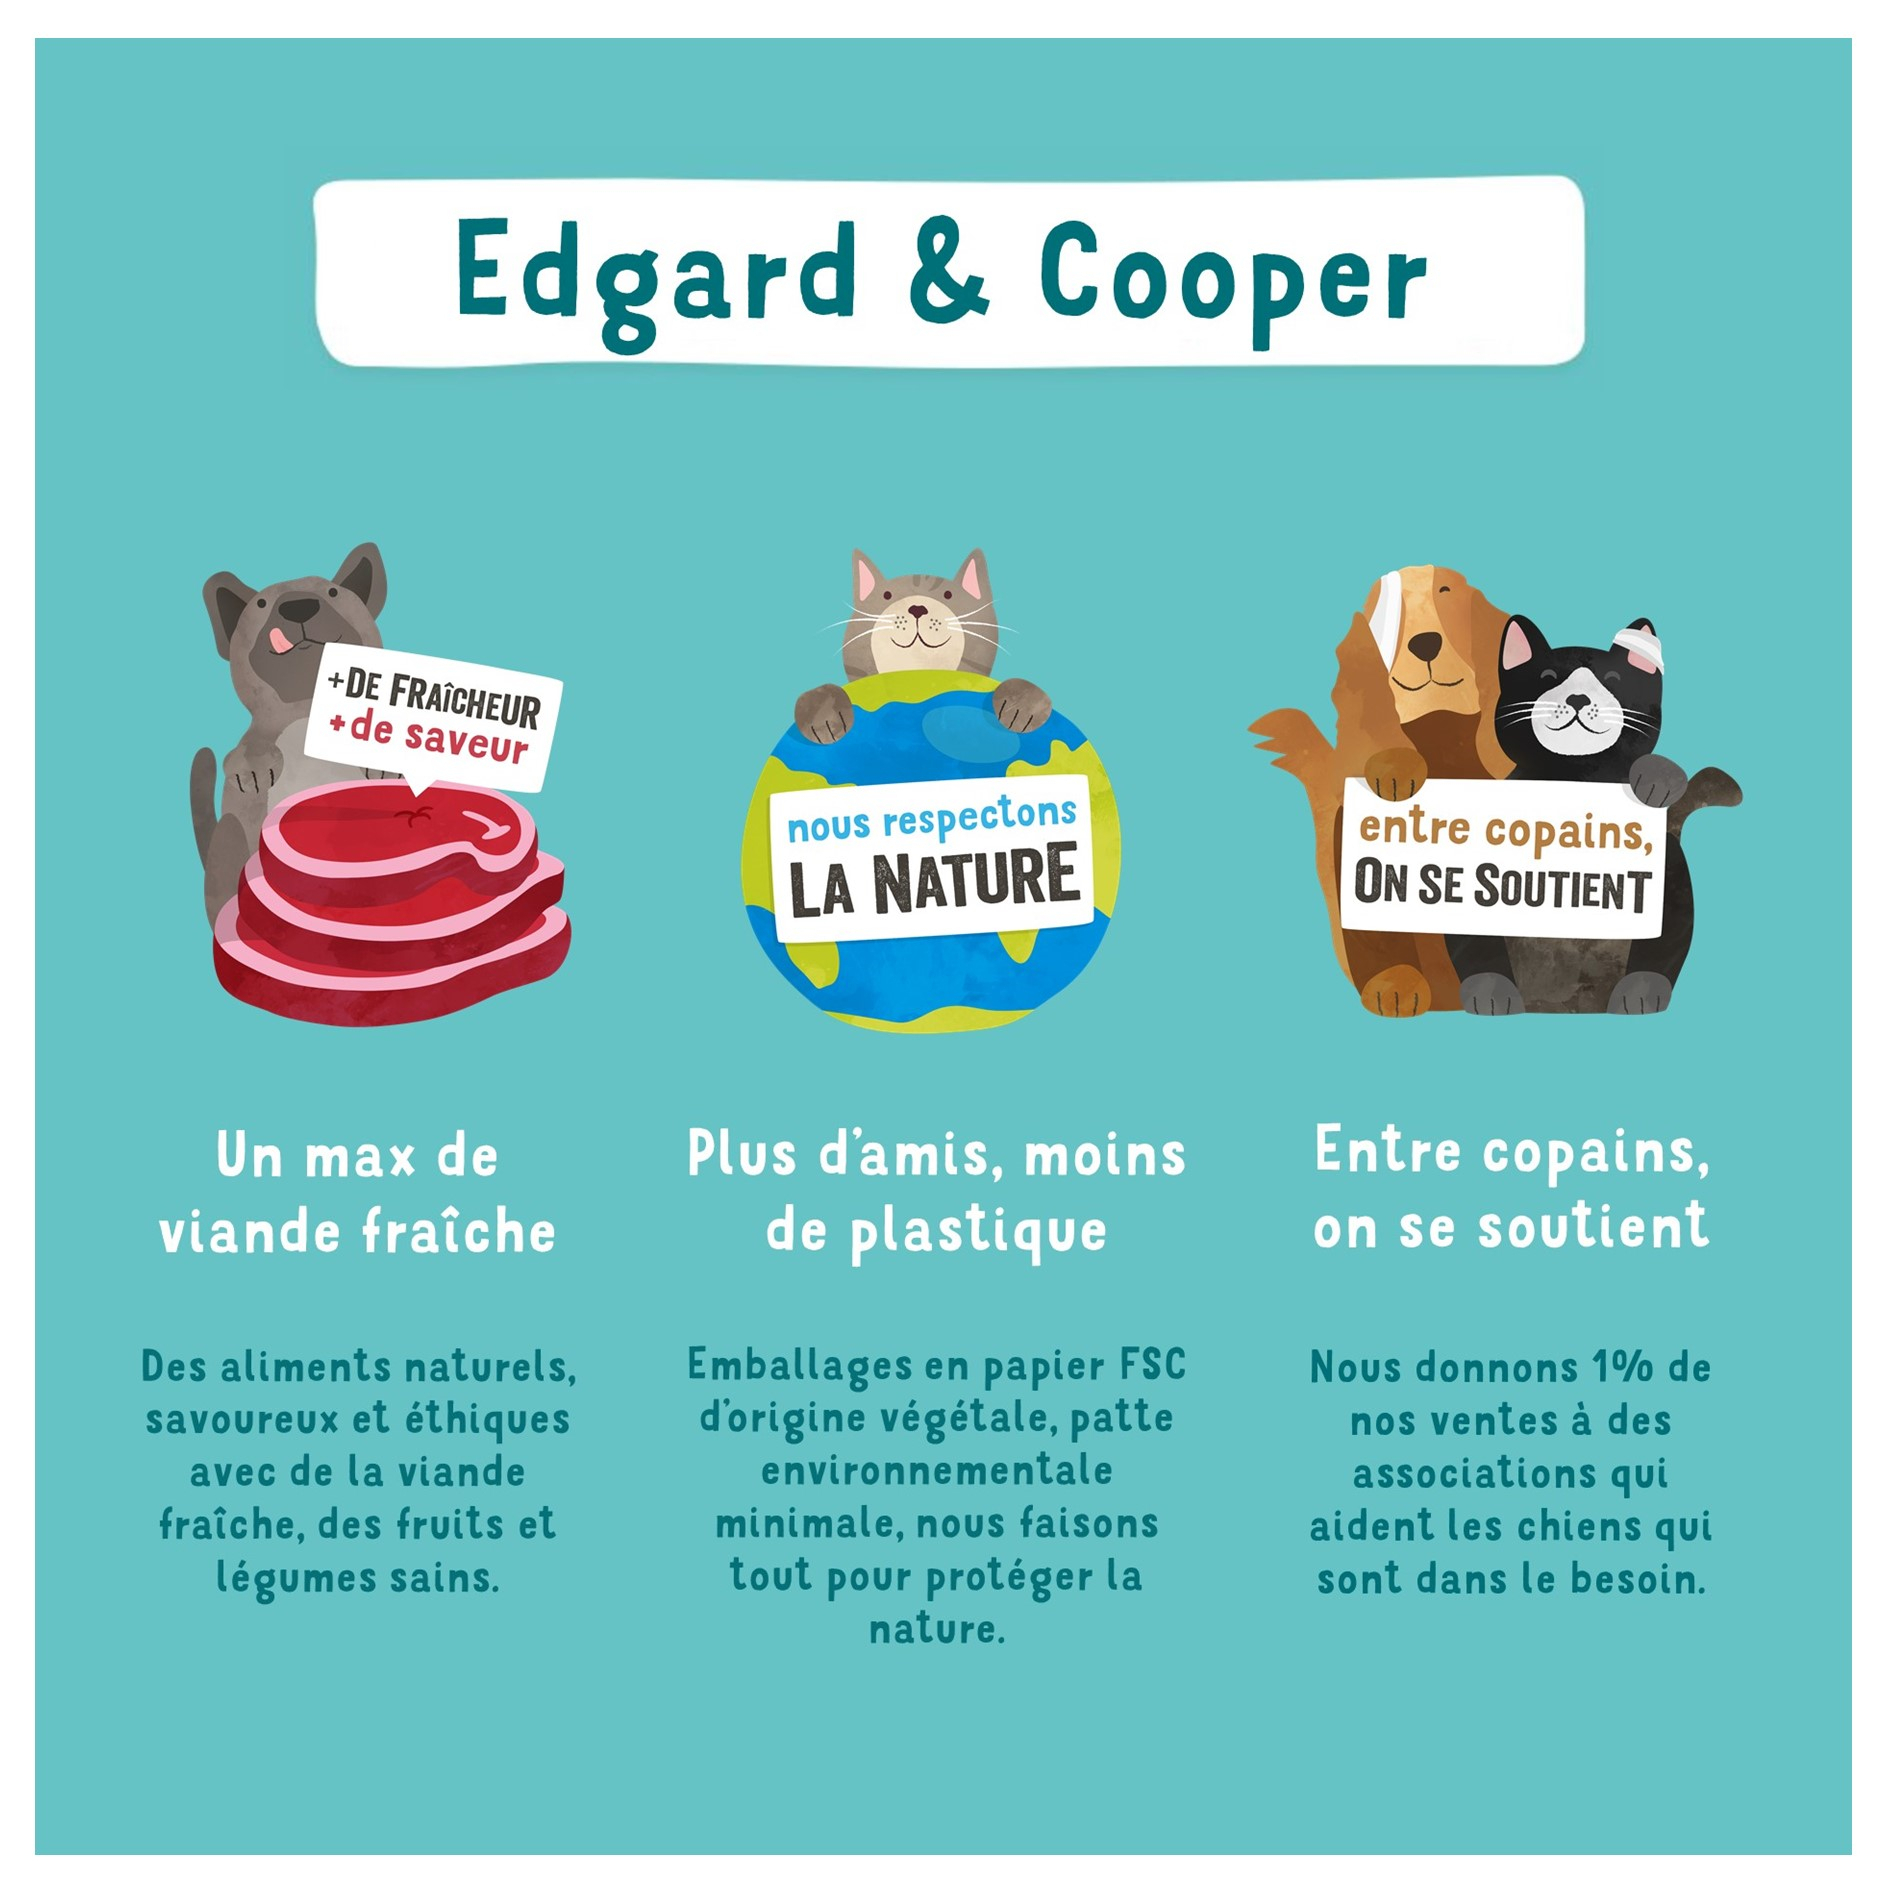 Edgard & Cooper Multipack Morceaux en Sauce 8 x 85g Poulet Saumon Dinde et Agneau frais Sans Céréales pour Chat